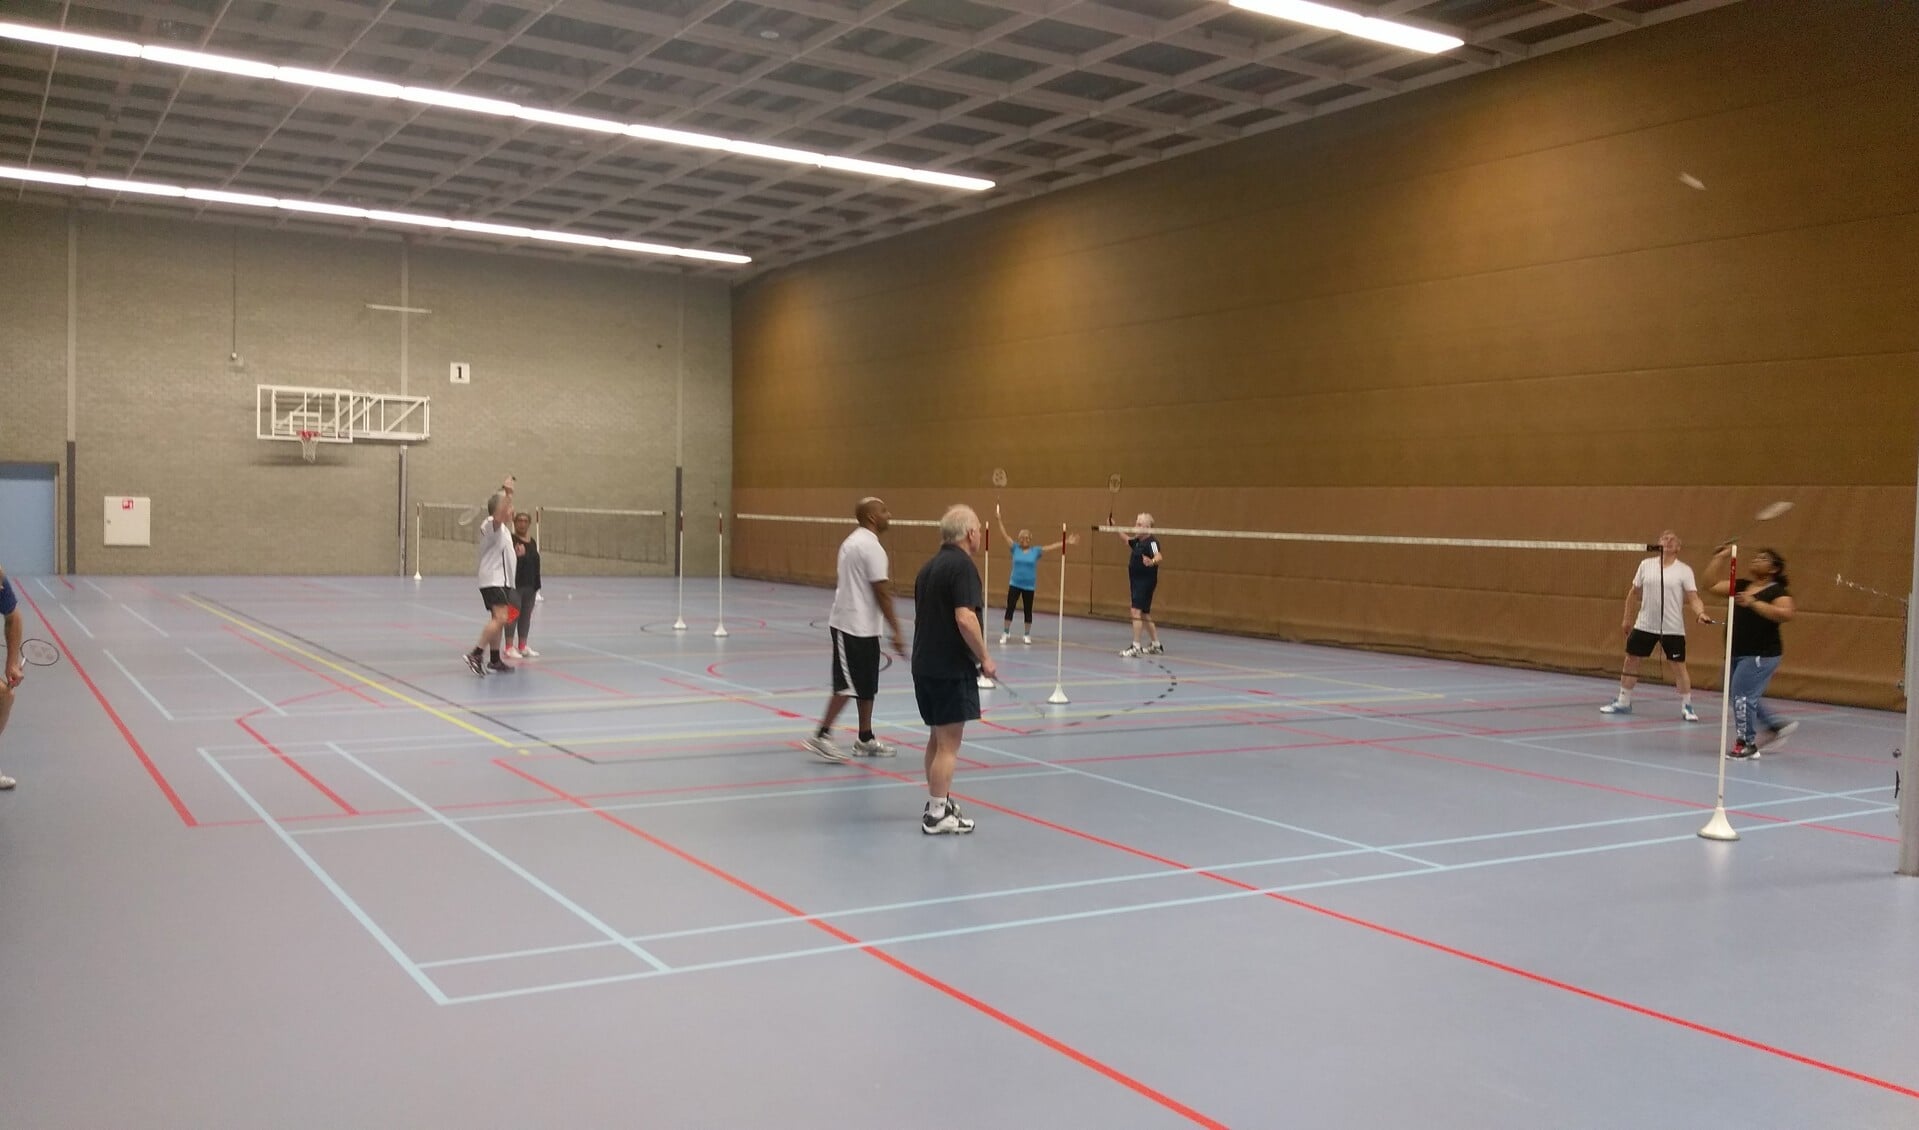 Recreanten aan het badmintonnen bij BVC'74 in De Kwel in Cuijk.